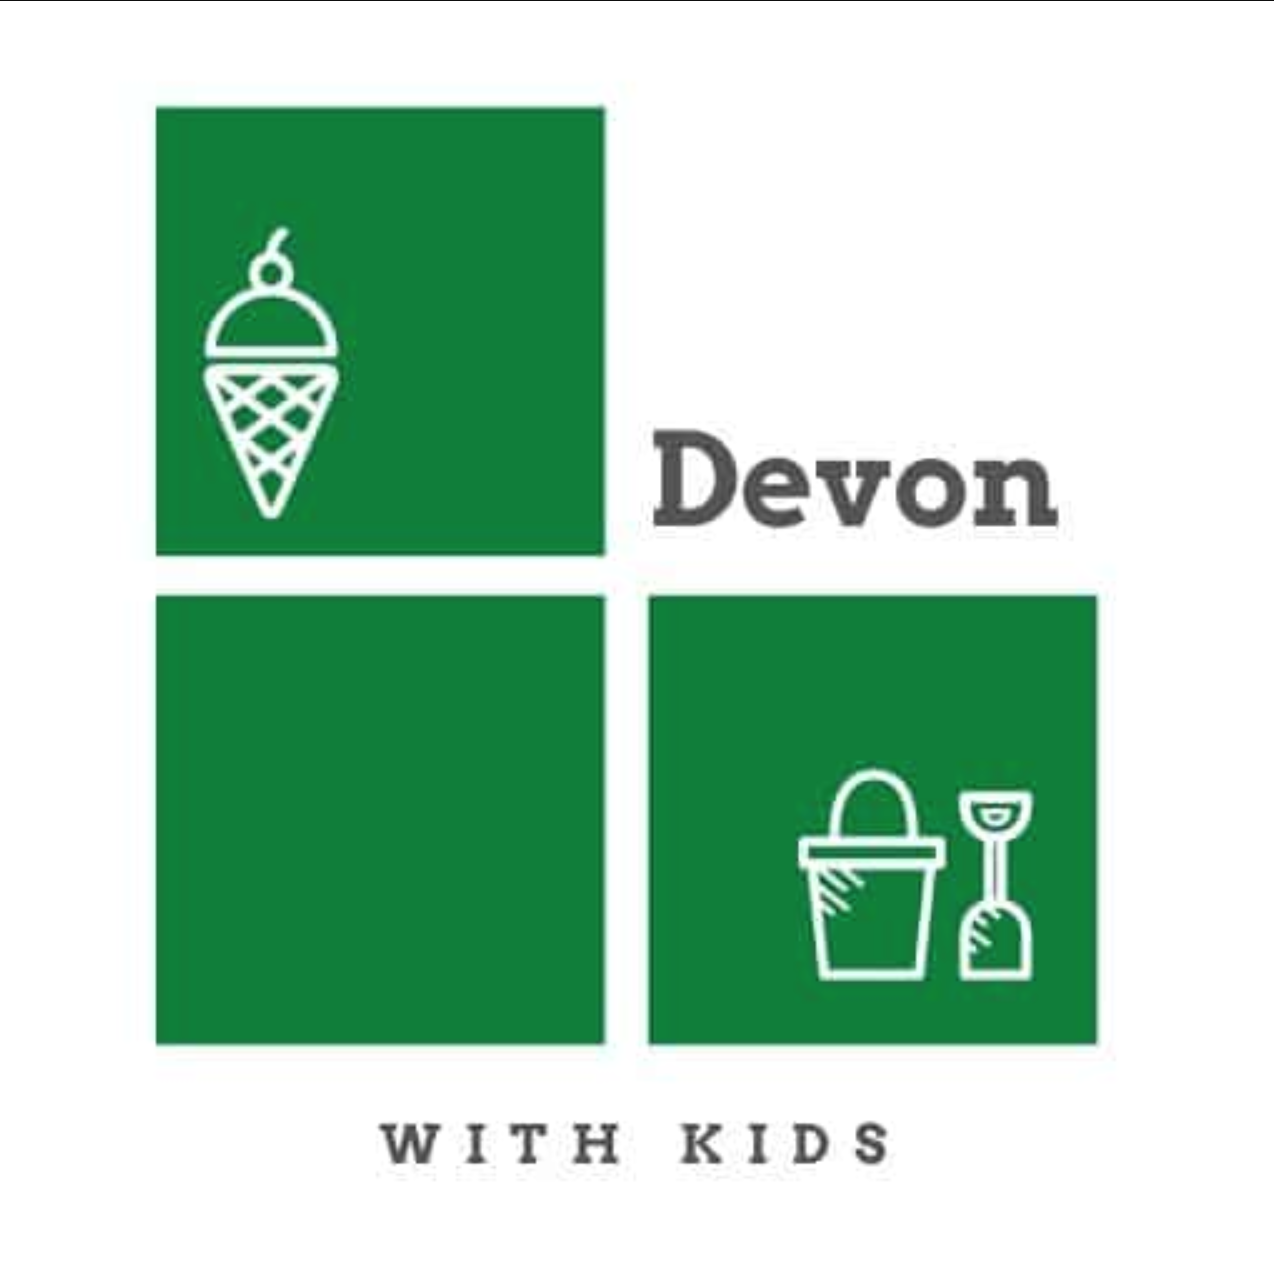 Devon With Kids